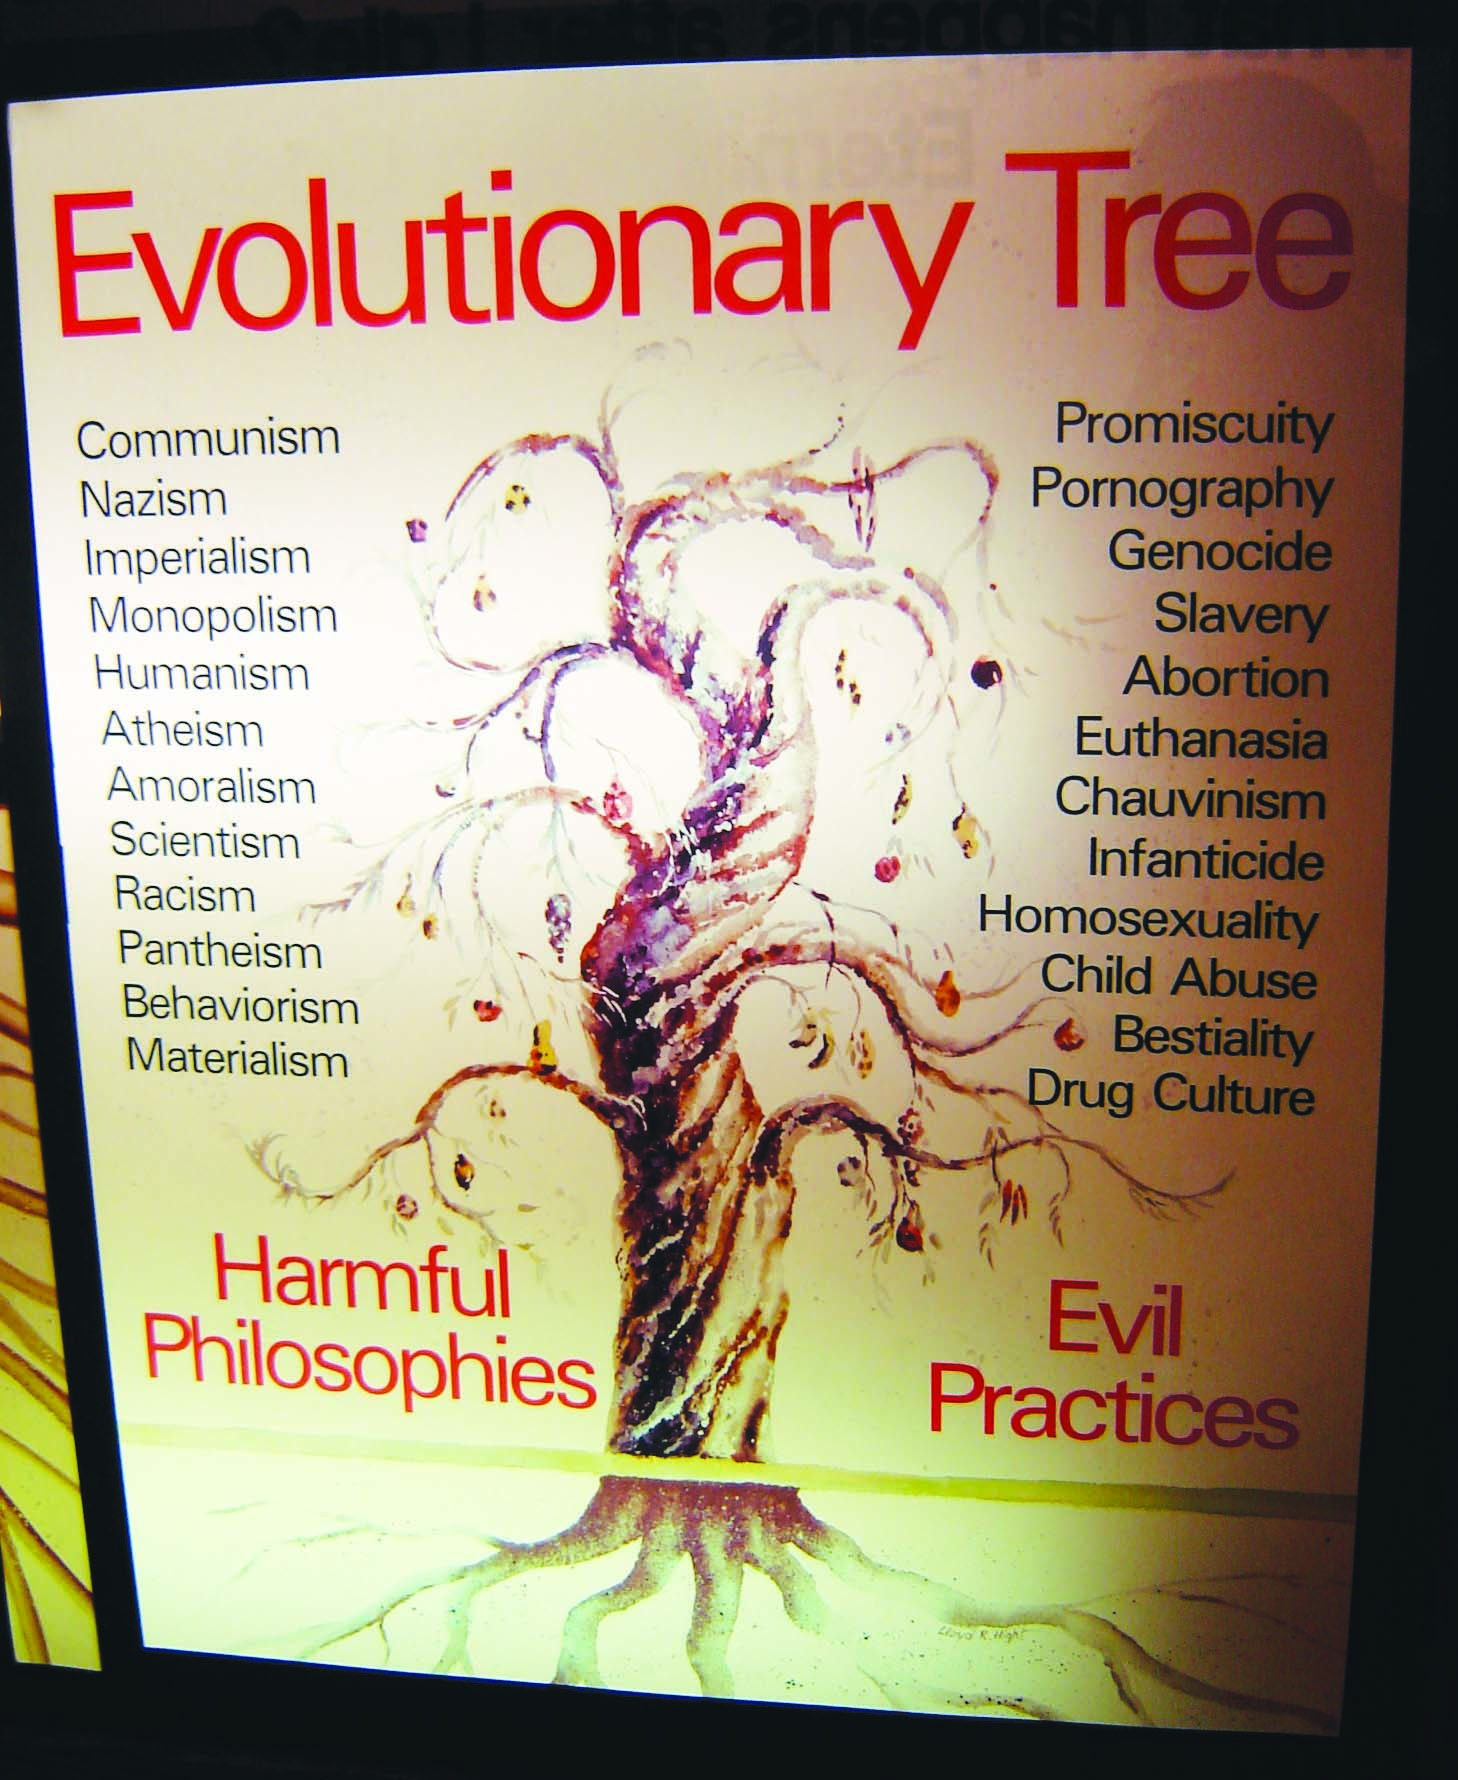 Tree of Evil image